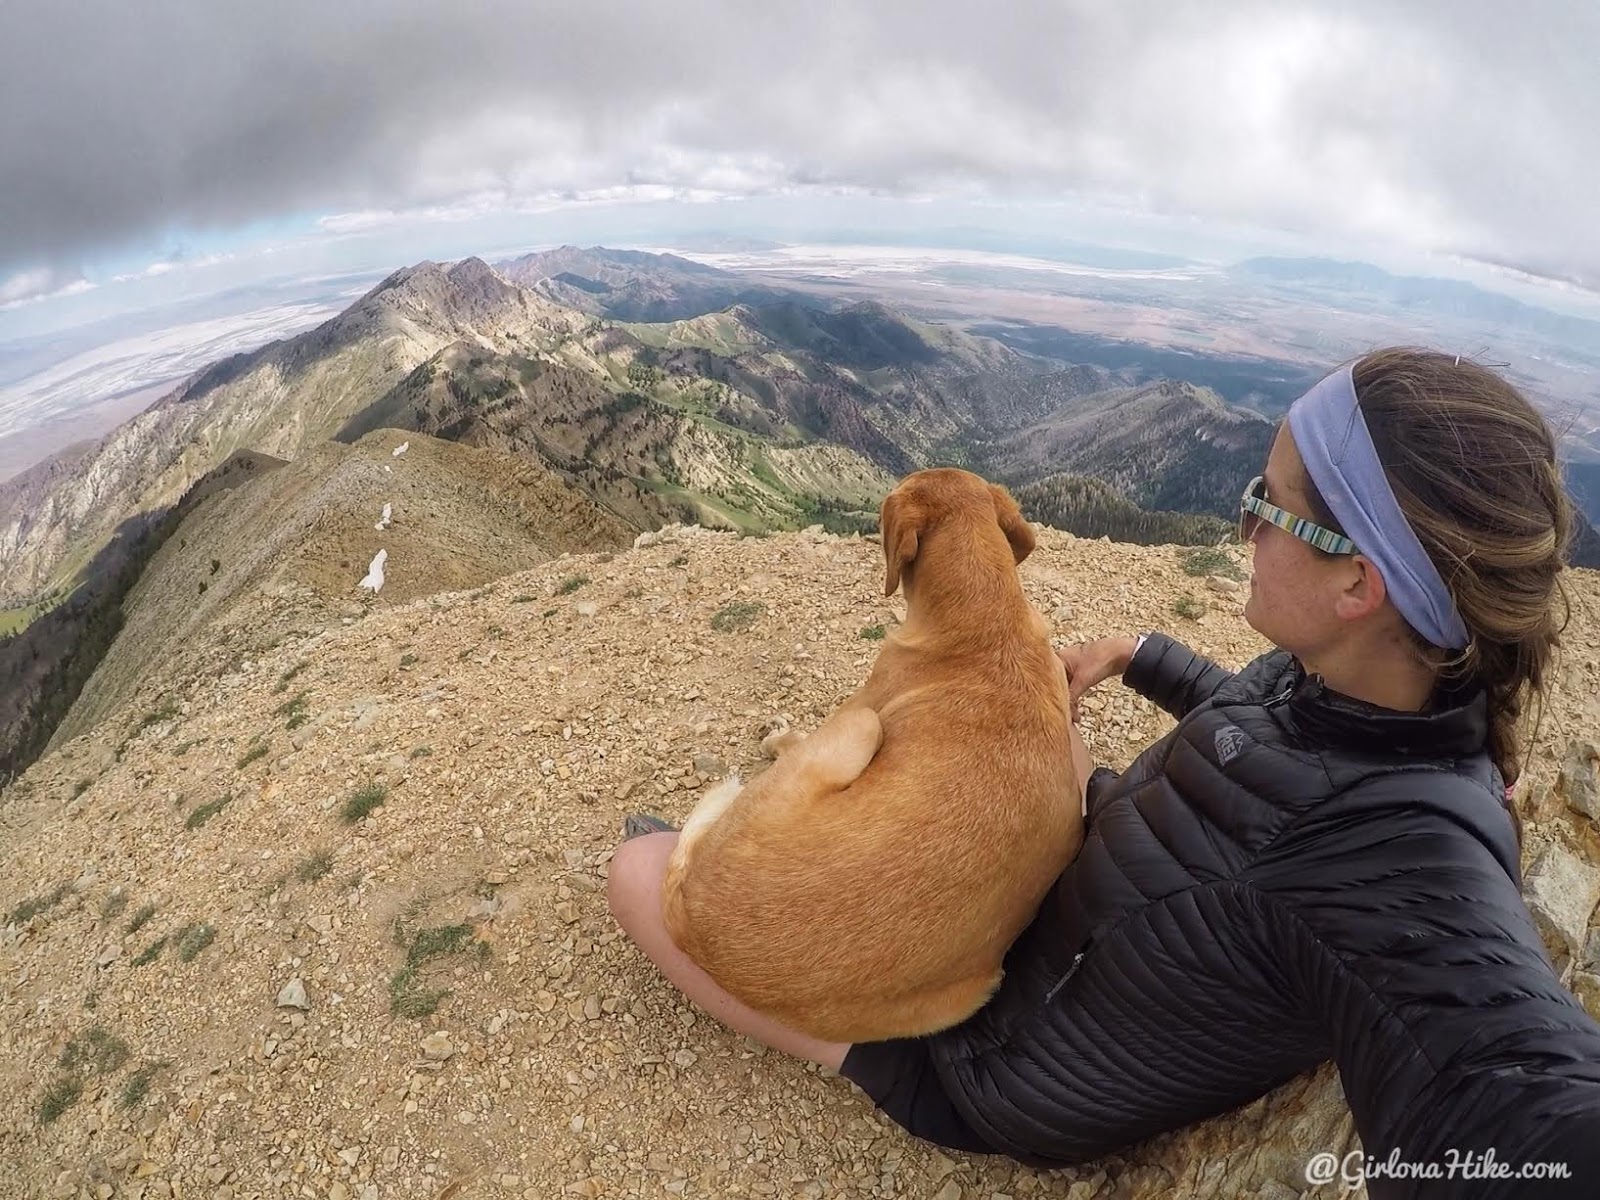 Hiking to Deseret Peak, Utah's Ultra Prominence Peaks, Hiking in Utah with Dogs